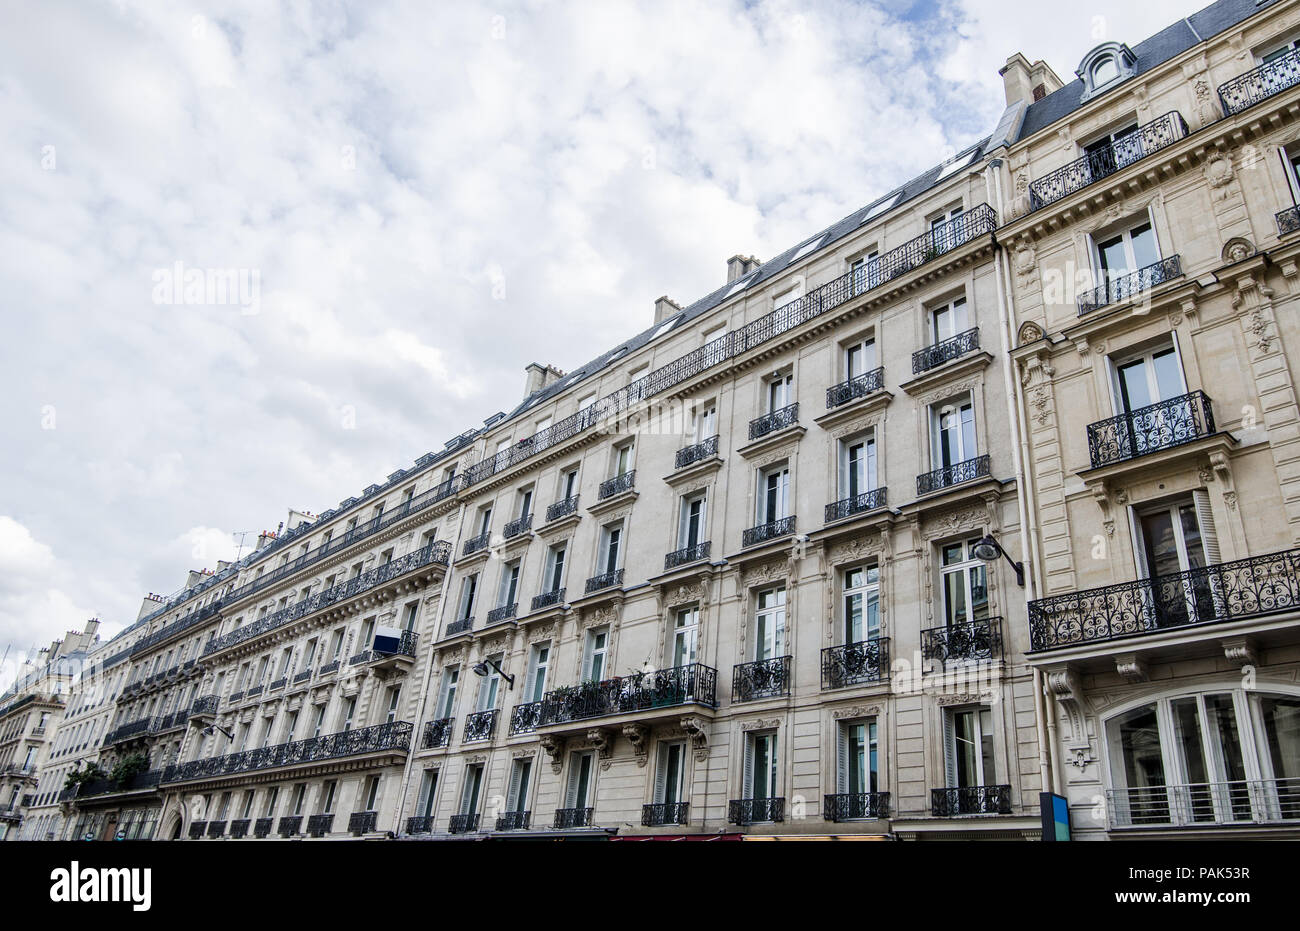 Bâtiments historiques générique à Paris avec un regard de l'architecture locale artistique dans cette merveilleuse attraction touristique européenne Banque D'Images